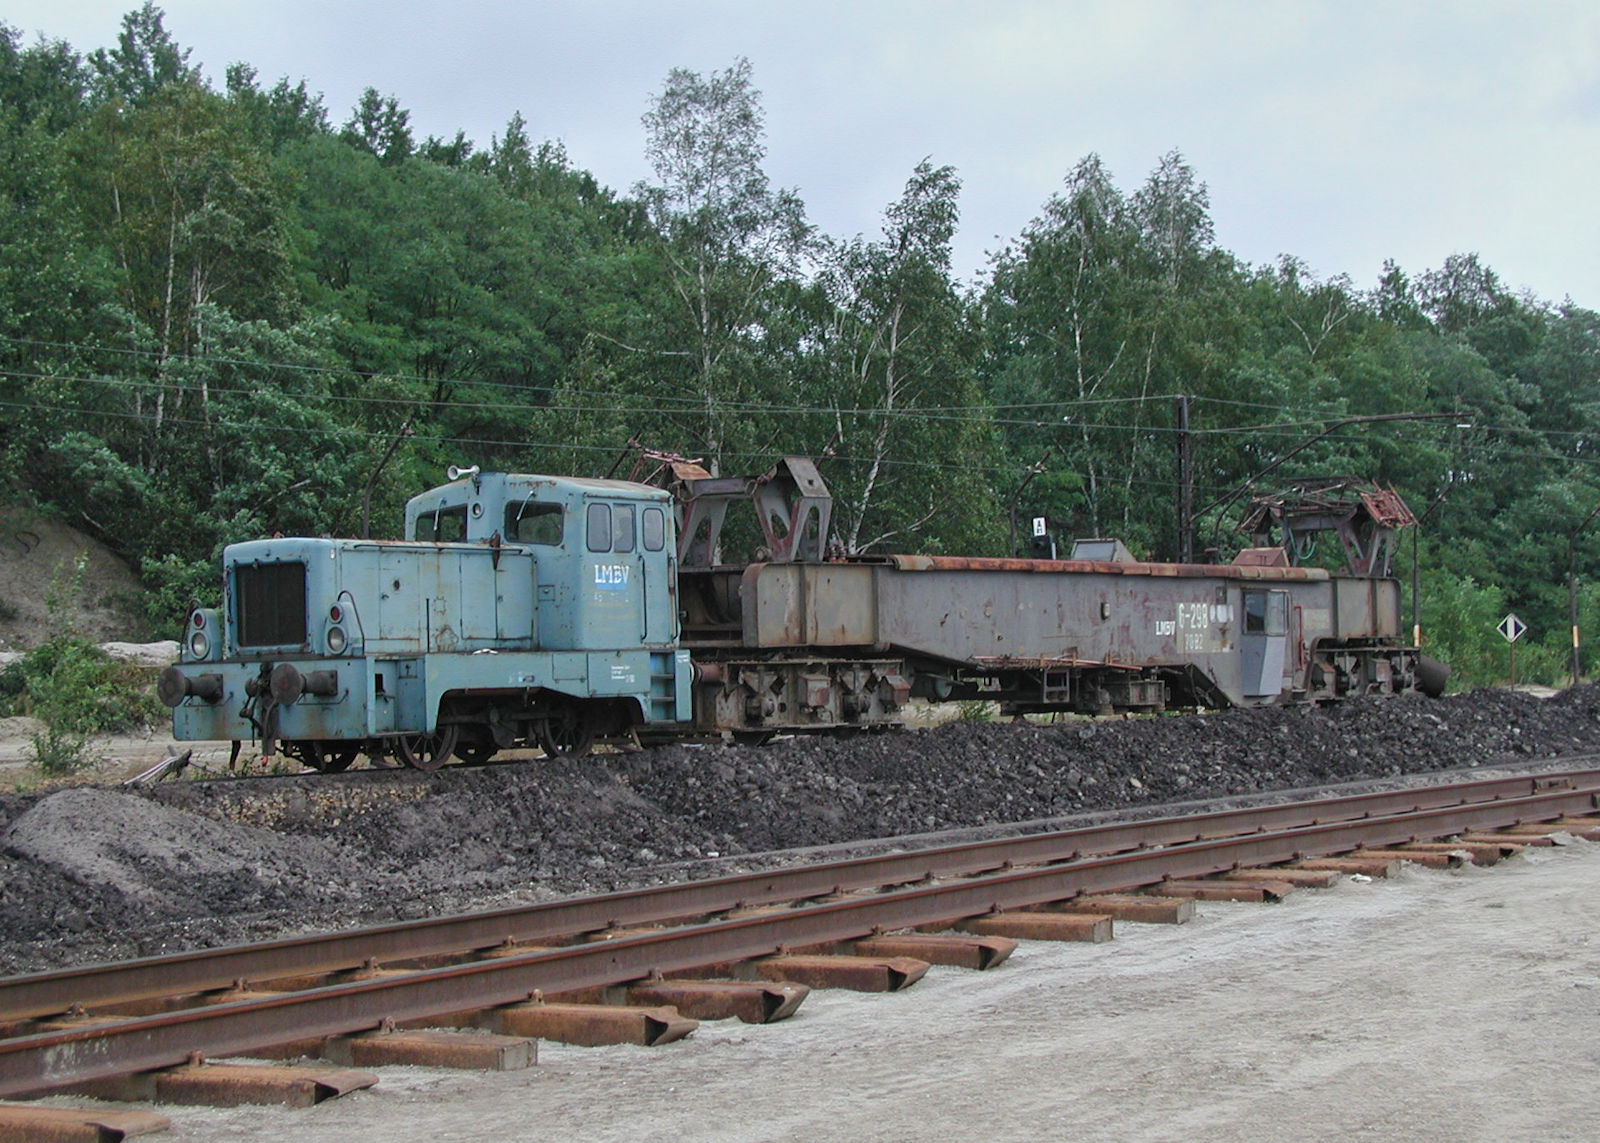 Am 14.08.2004 war der letzte Betriebstag im Tagebau Klettwitz und Klettwitz Nord. Ausgedient hatte damit auch die Gleisrückmaschine G298, welche von der V22 Di 453 abgeholt wurde. 
Anlässlich des letzten Betriebstages war der Zugang zum Gelände problemlos möglich.